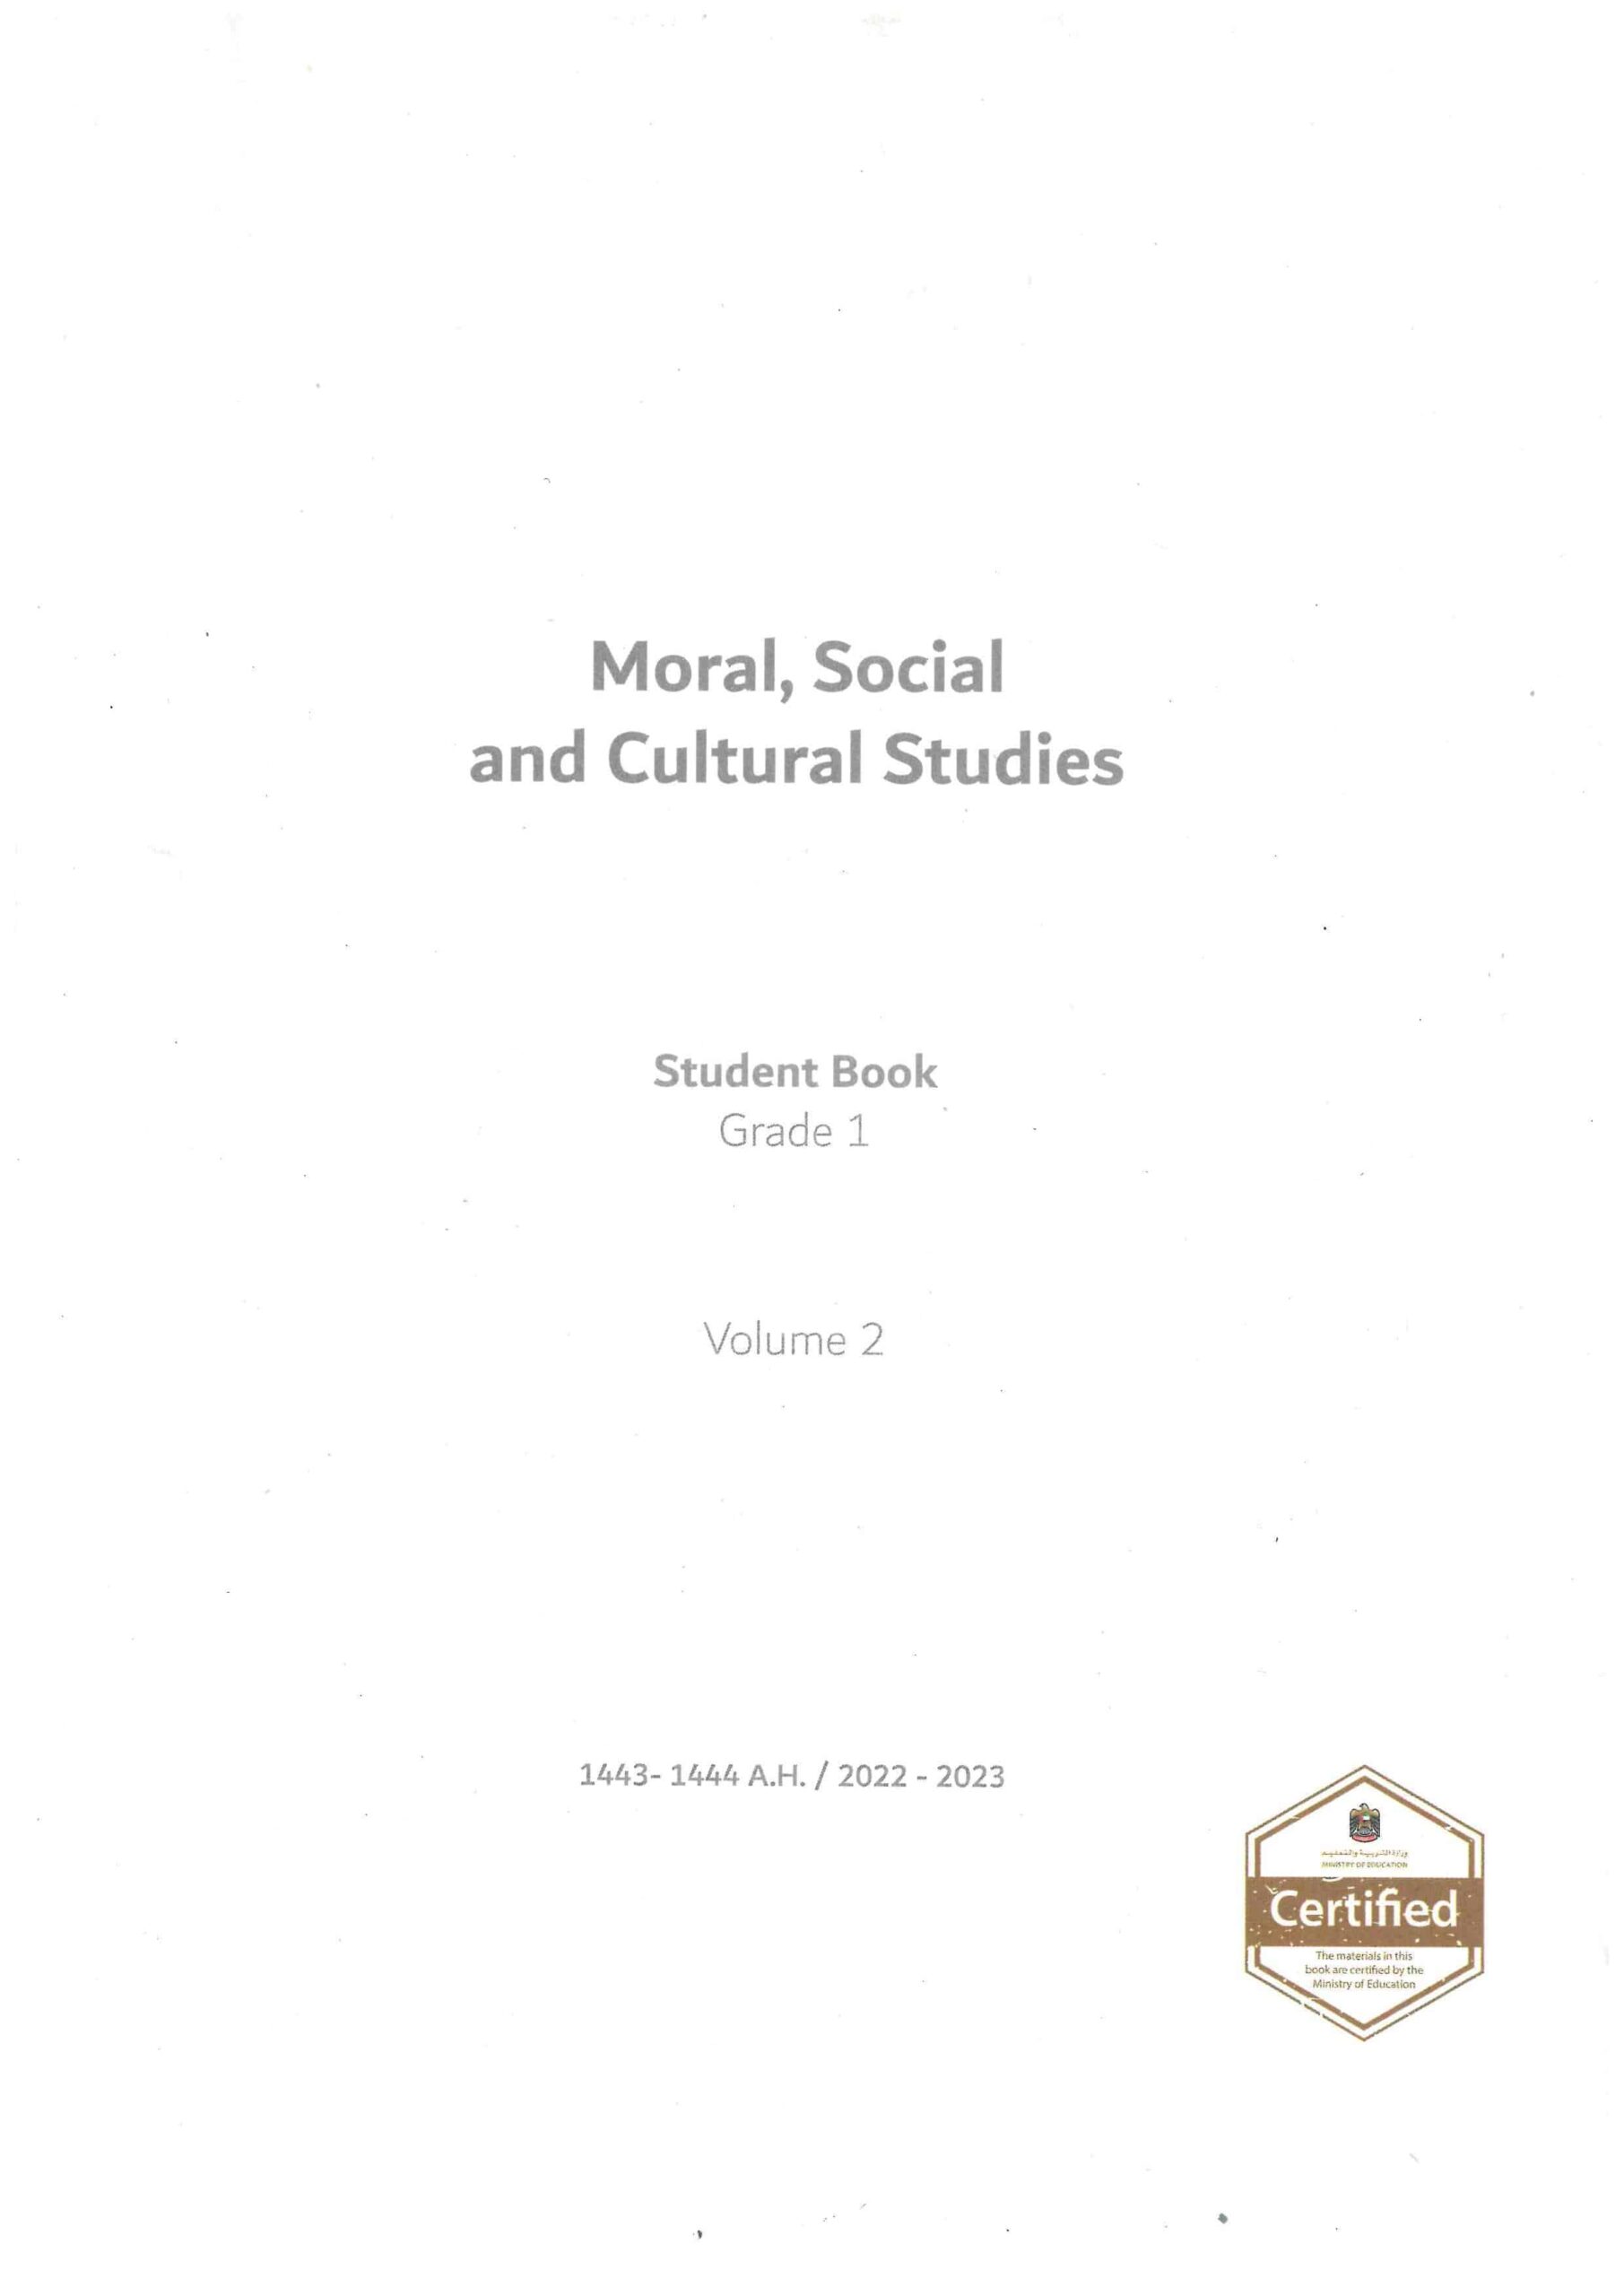 كتاب الطالب لغير الناطقين بها Moral Social & Cultural Studies الصف الأول الفصل الدراسي الثاني 2022-2023